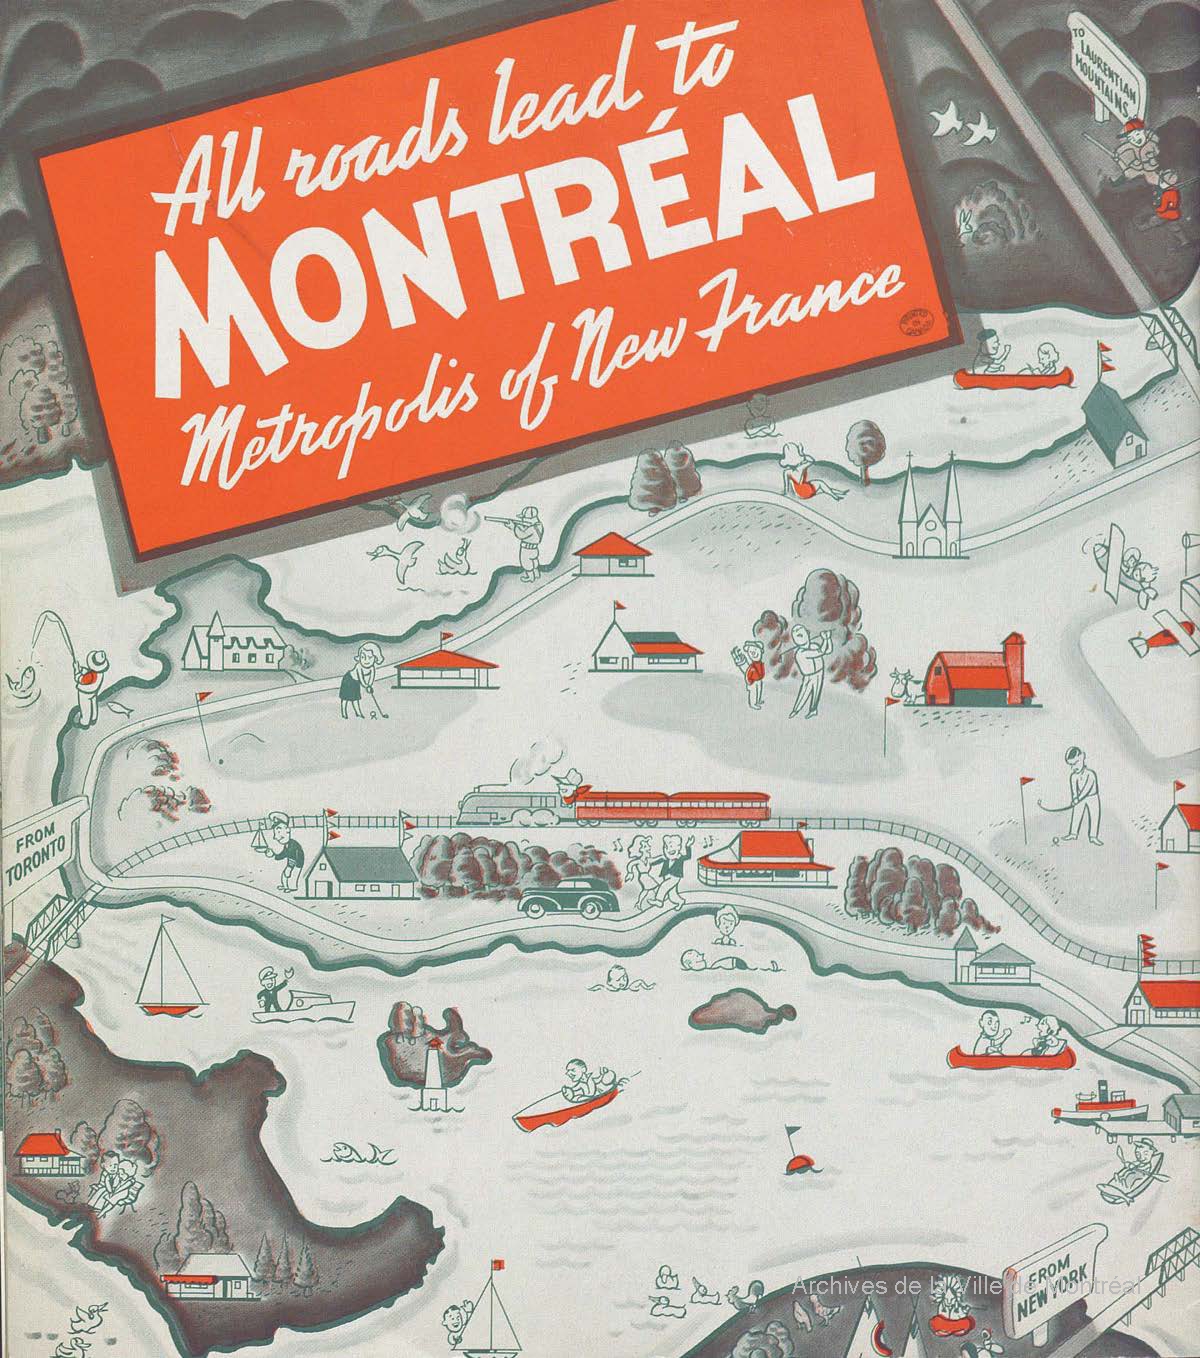 Première de couverture d’un guide de voyage de Montréal de 1939.